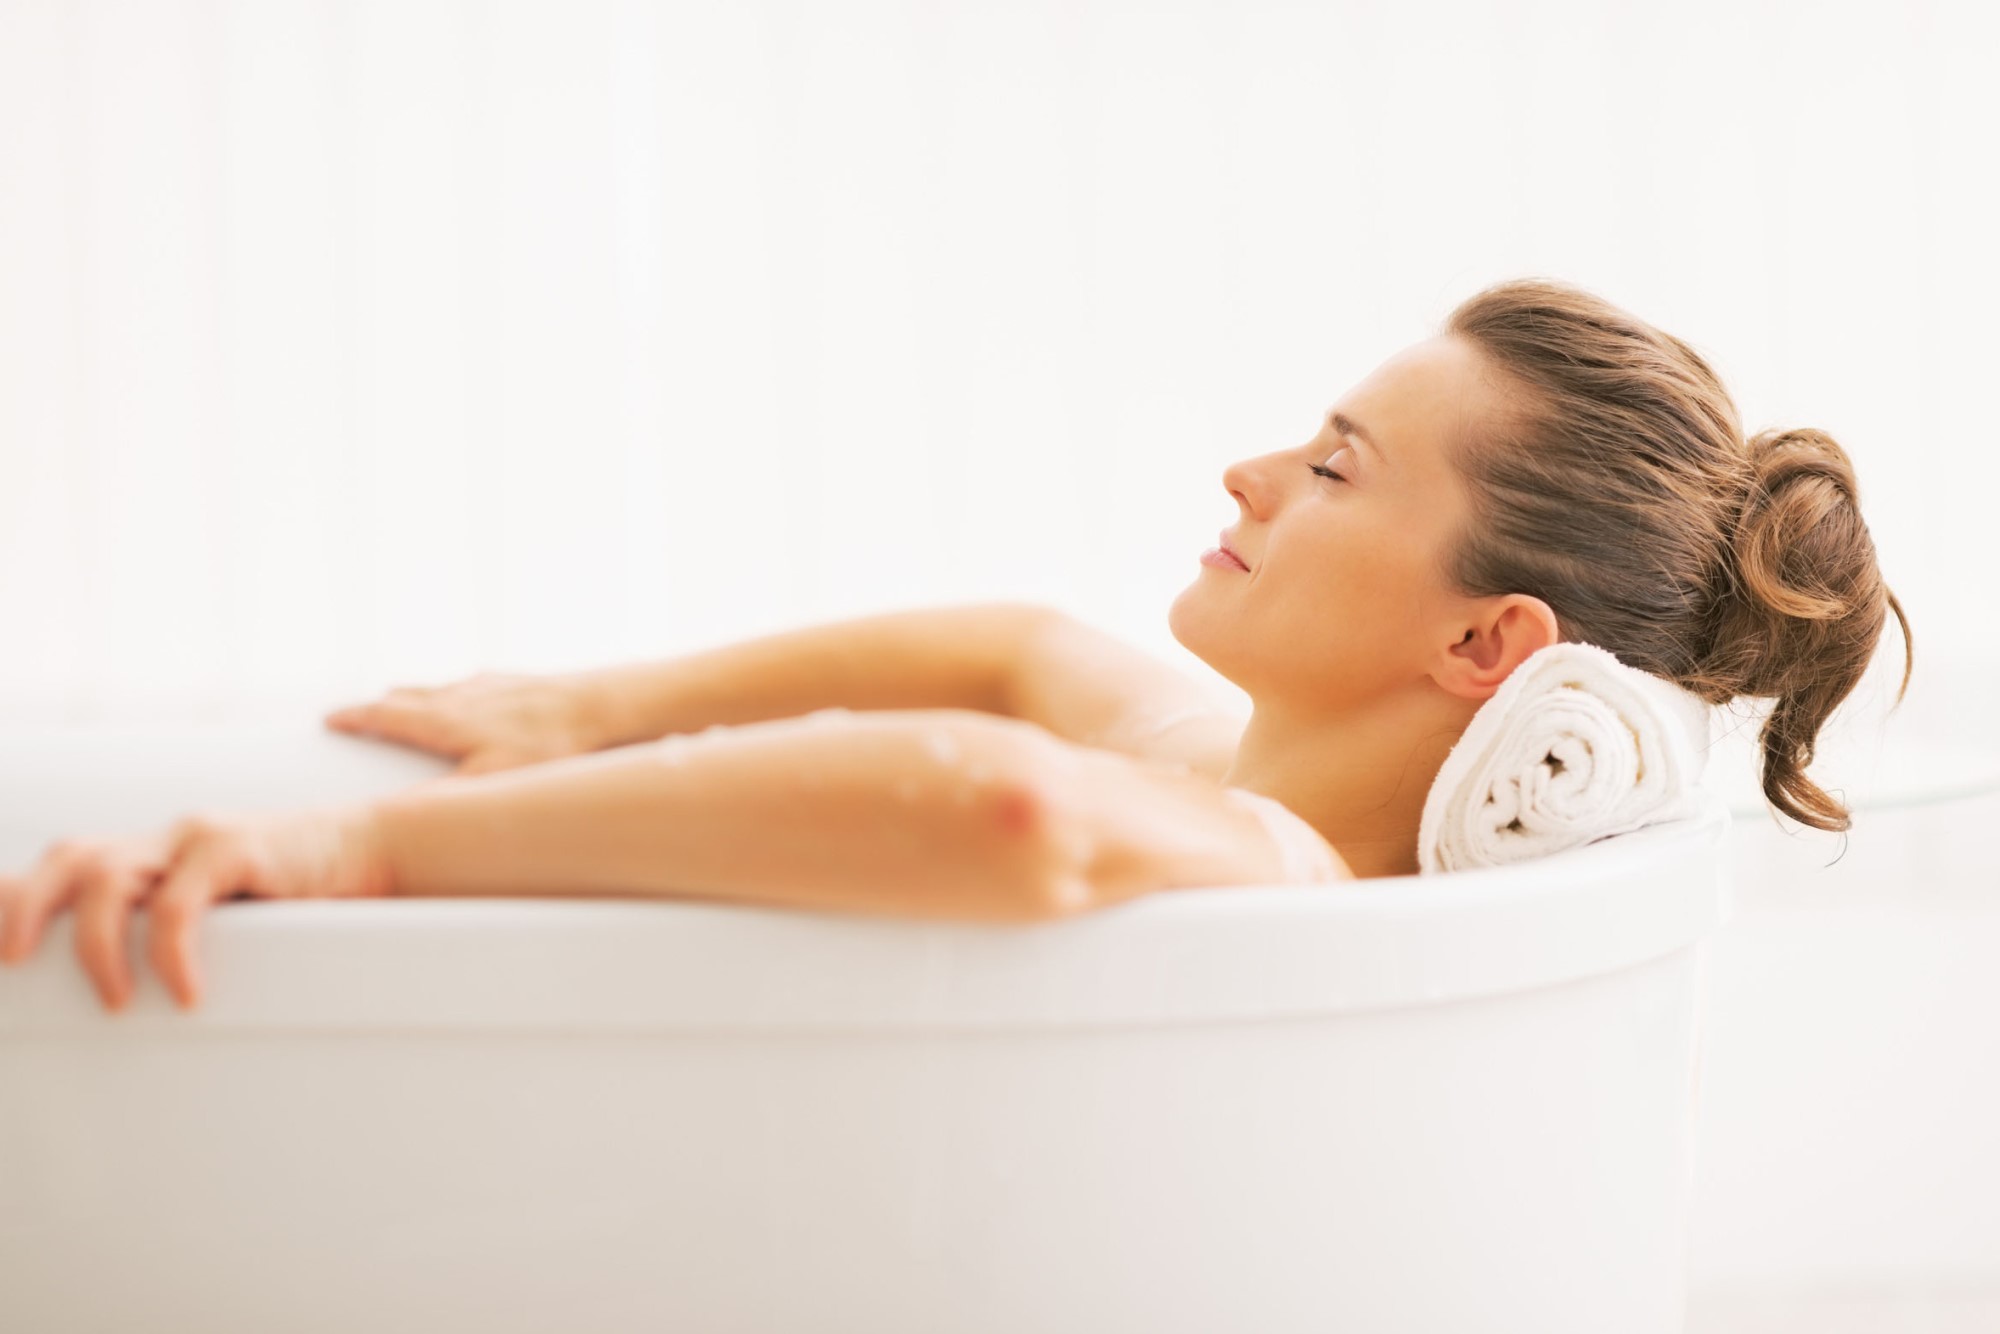 Frau mit langen braunen haaren liegt entspannt in einer Badewanne 